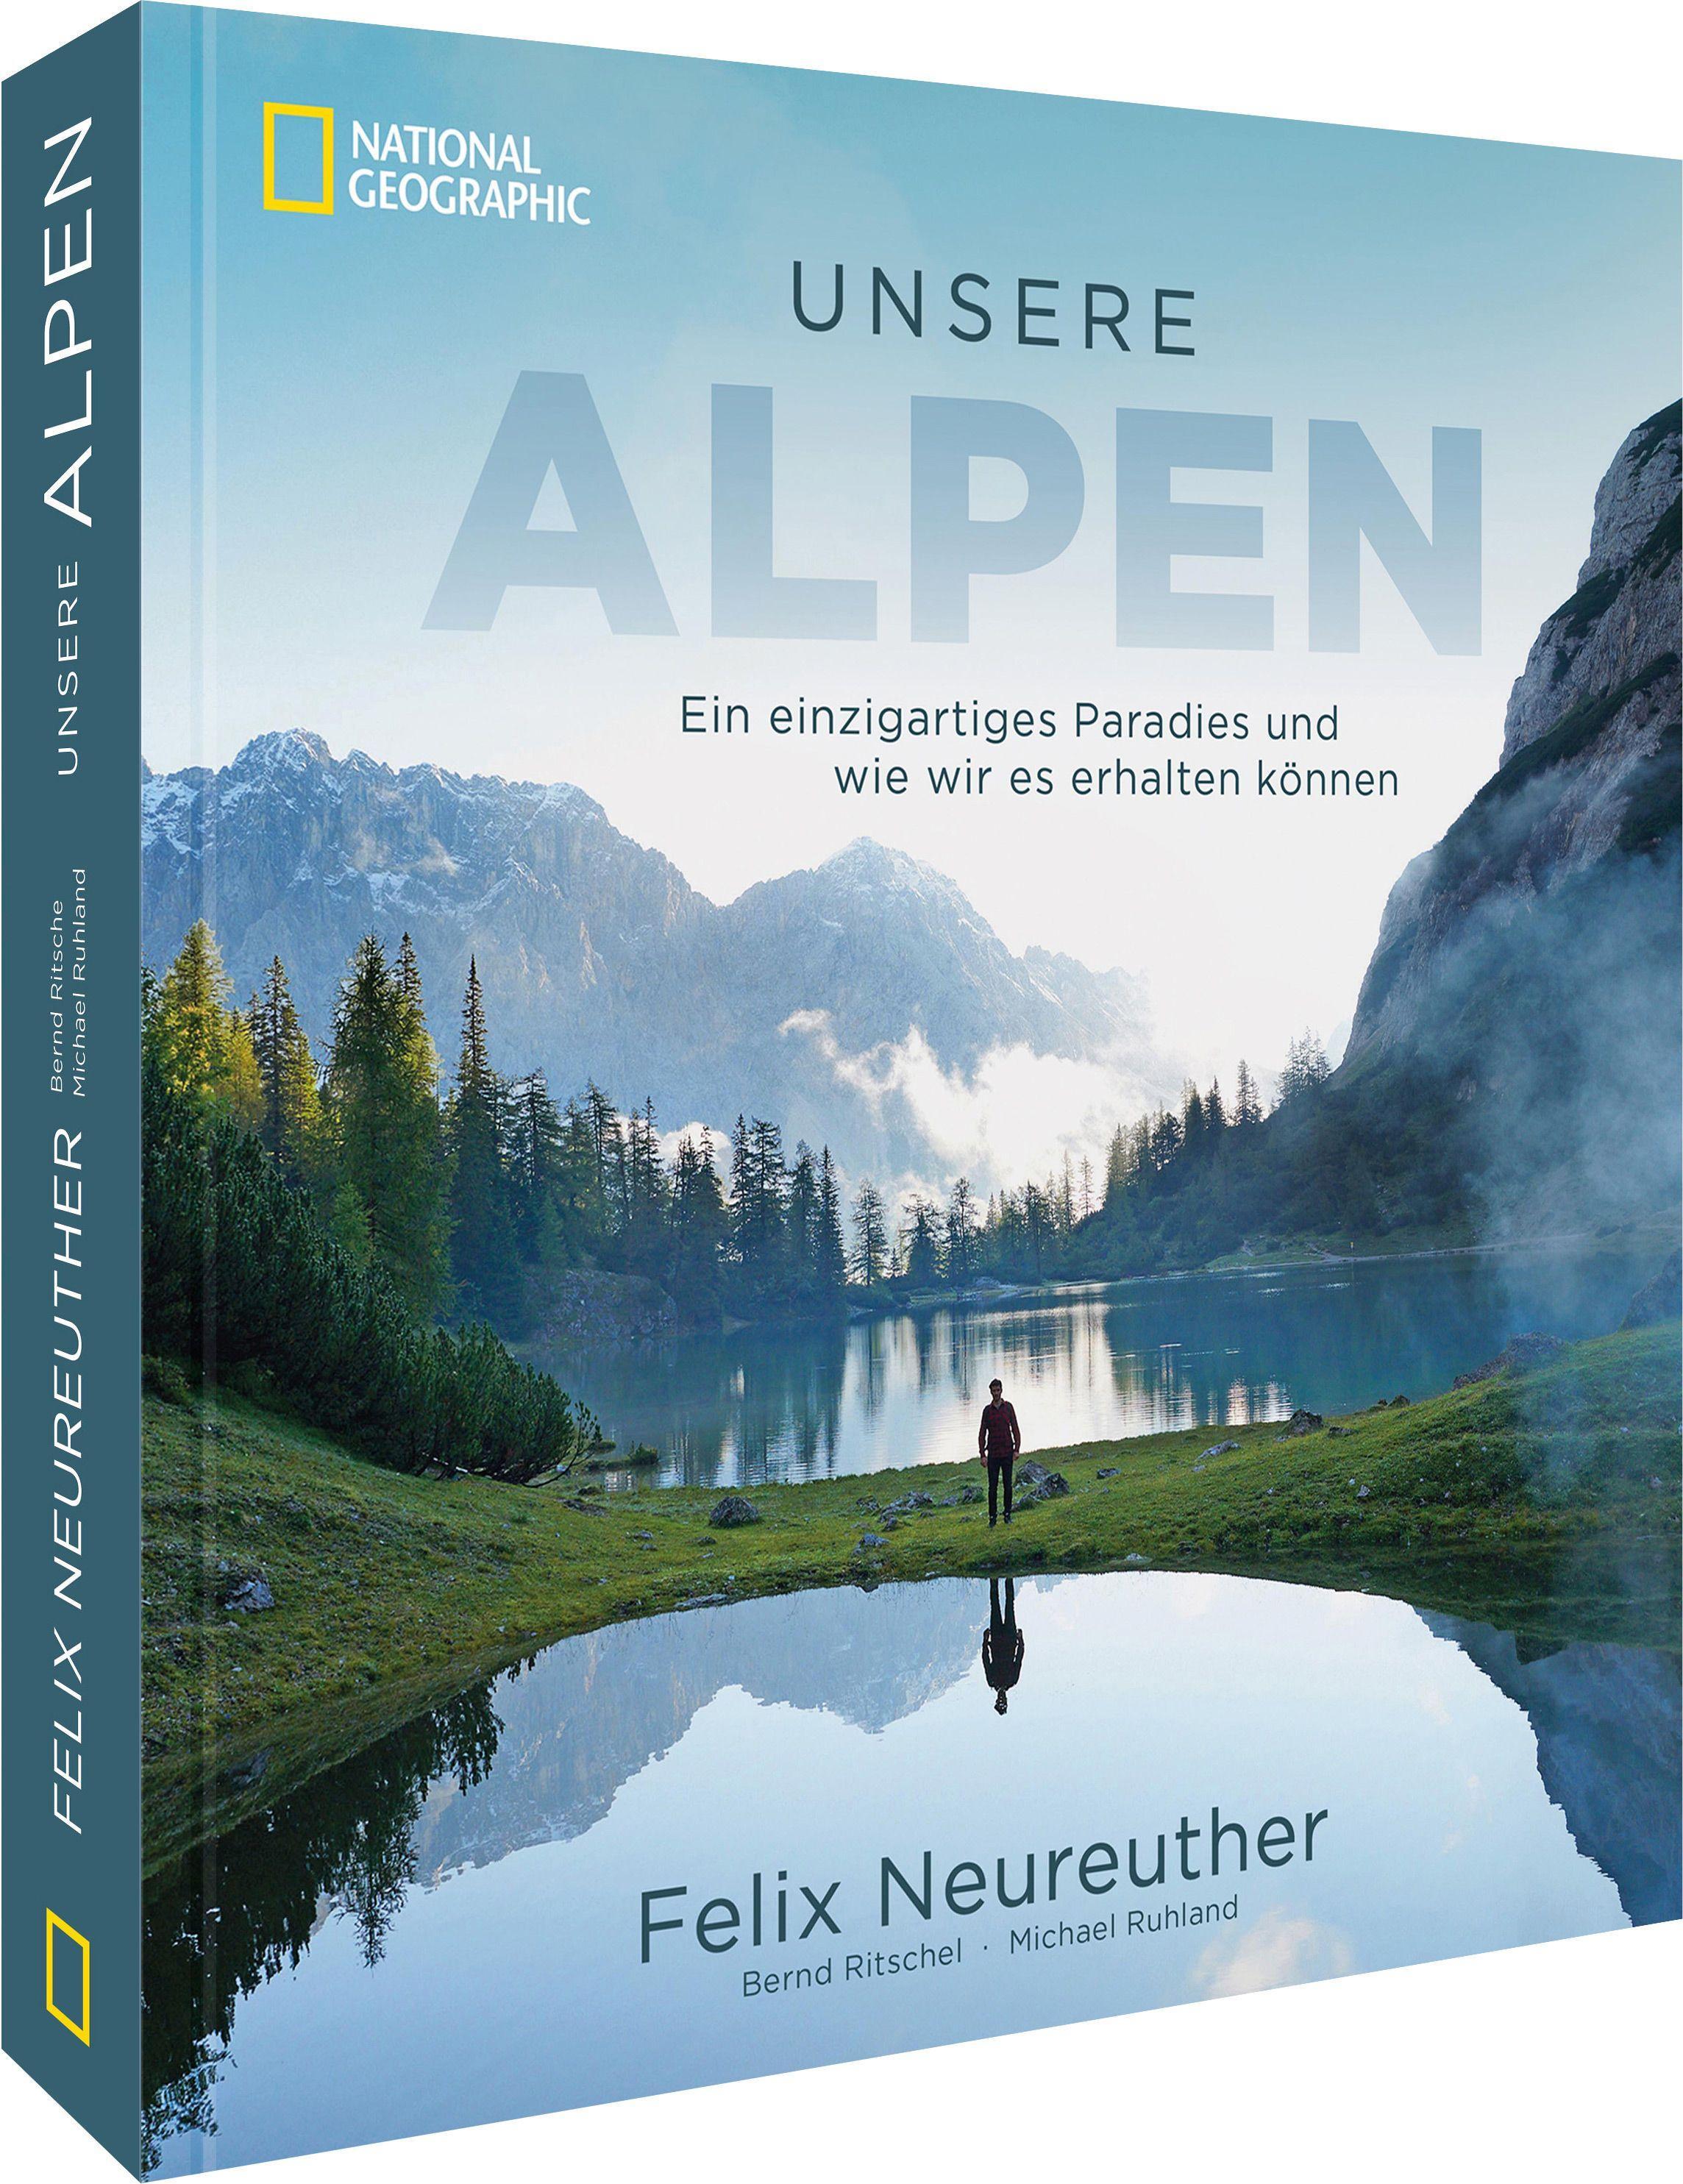 Unsere Alpen Ein einzigartiges Paradies und wie wir es erhalten können. ITB Berlin BuchAward 2022